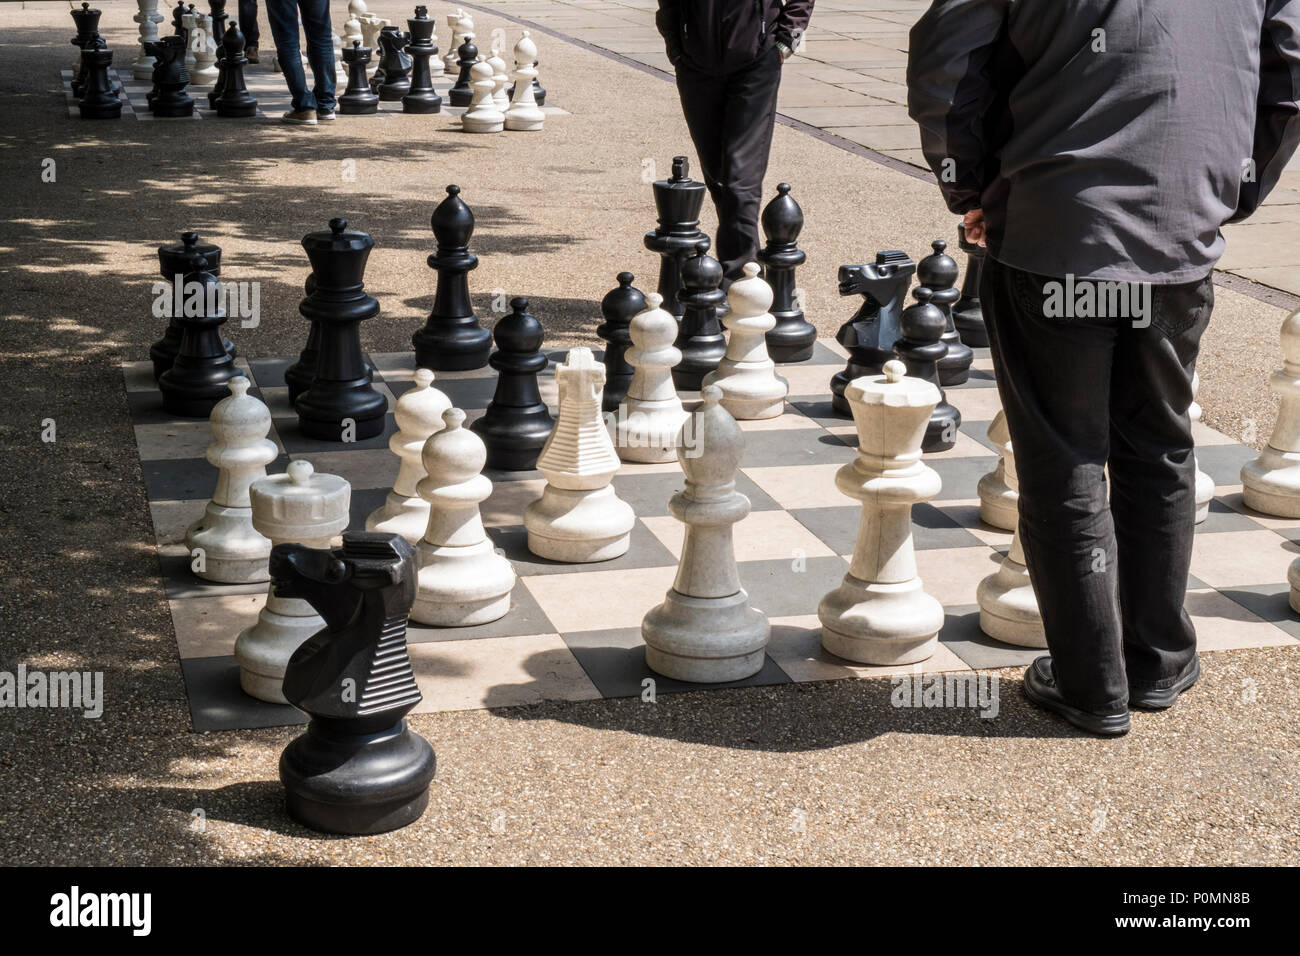 Deux personnes qui envisagent leur prochain déplacement tout en jouant aux échecs en plein air avec de grandes pièces, Victoria Gardens, Leeds, West Yorkshire, England, UK Banque D'Images